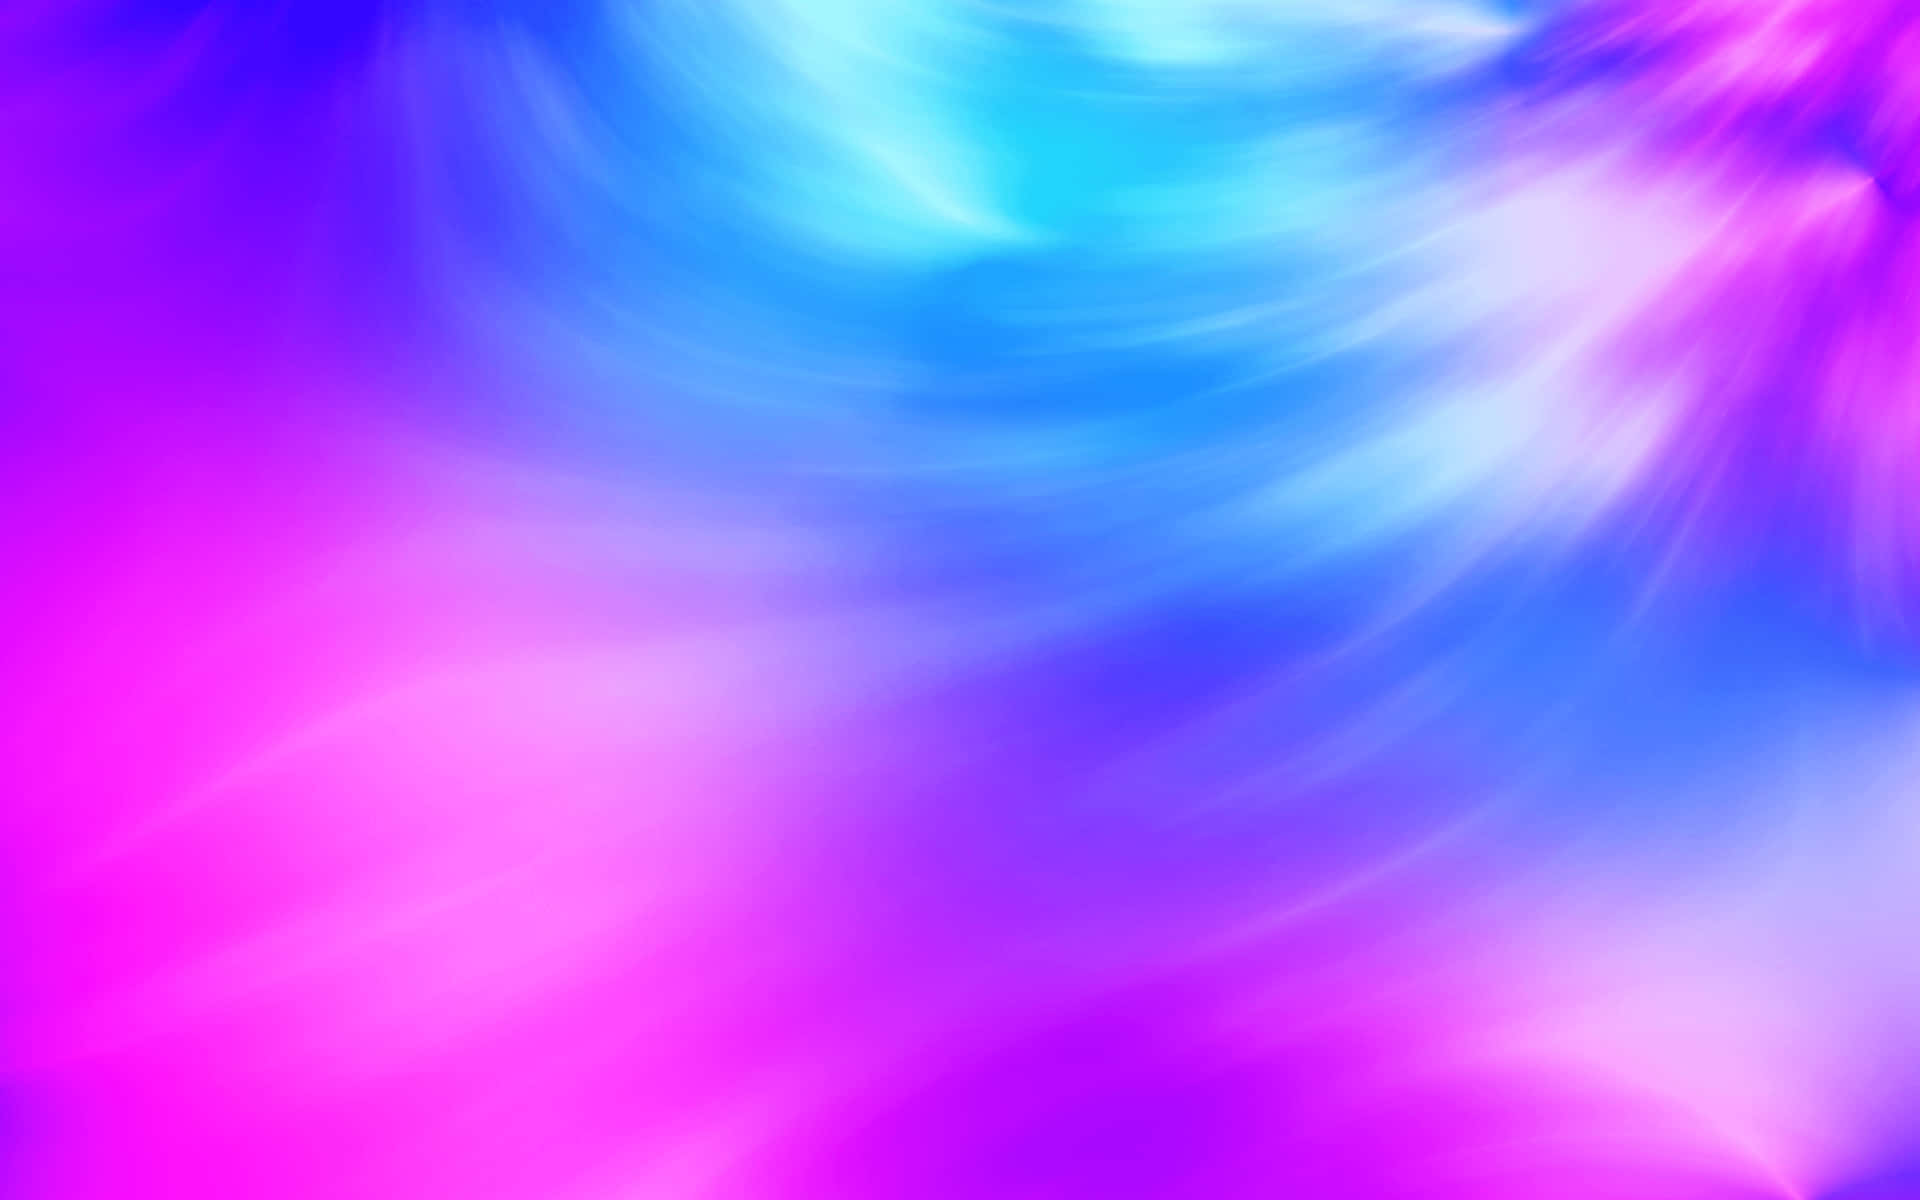 Umfundo Rosa E Azul Deslumbrantemente Vibrante Que Traz Energia E Vida A Qualquer Espaço